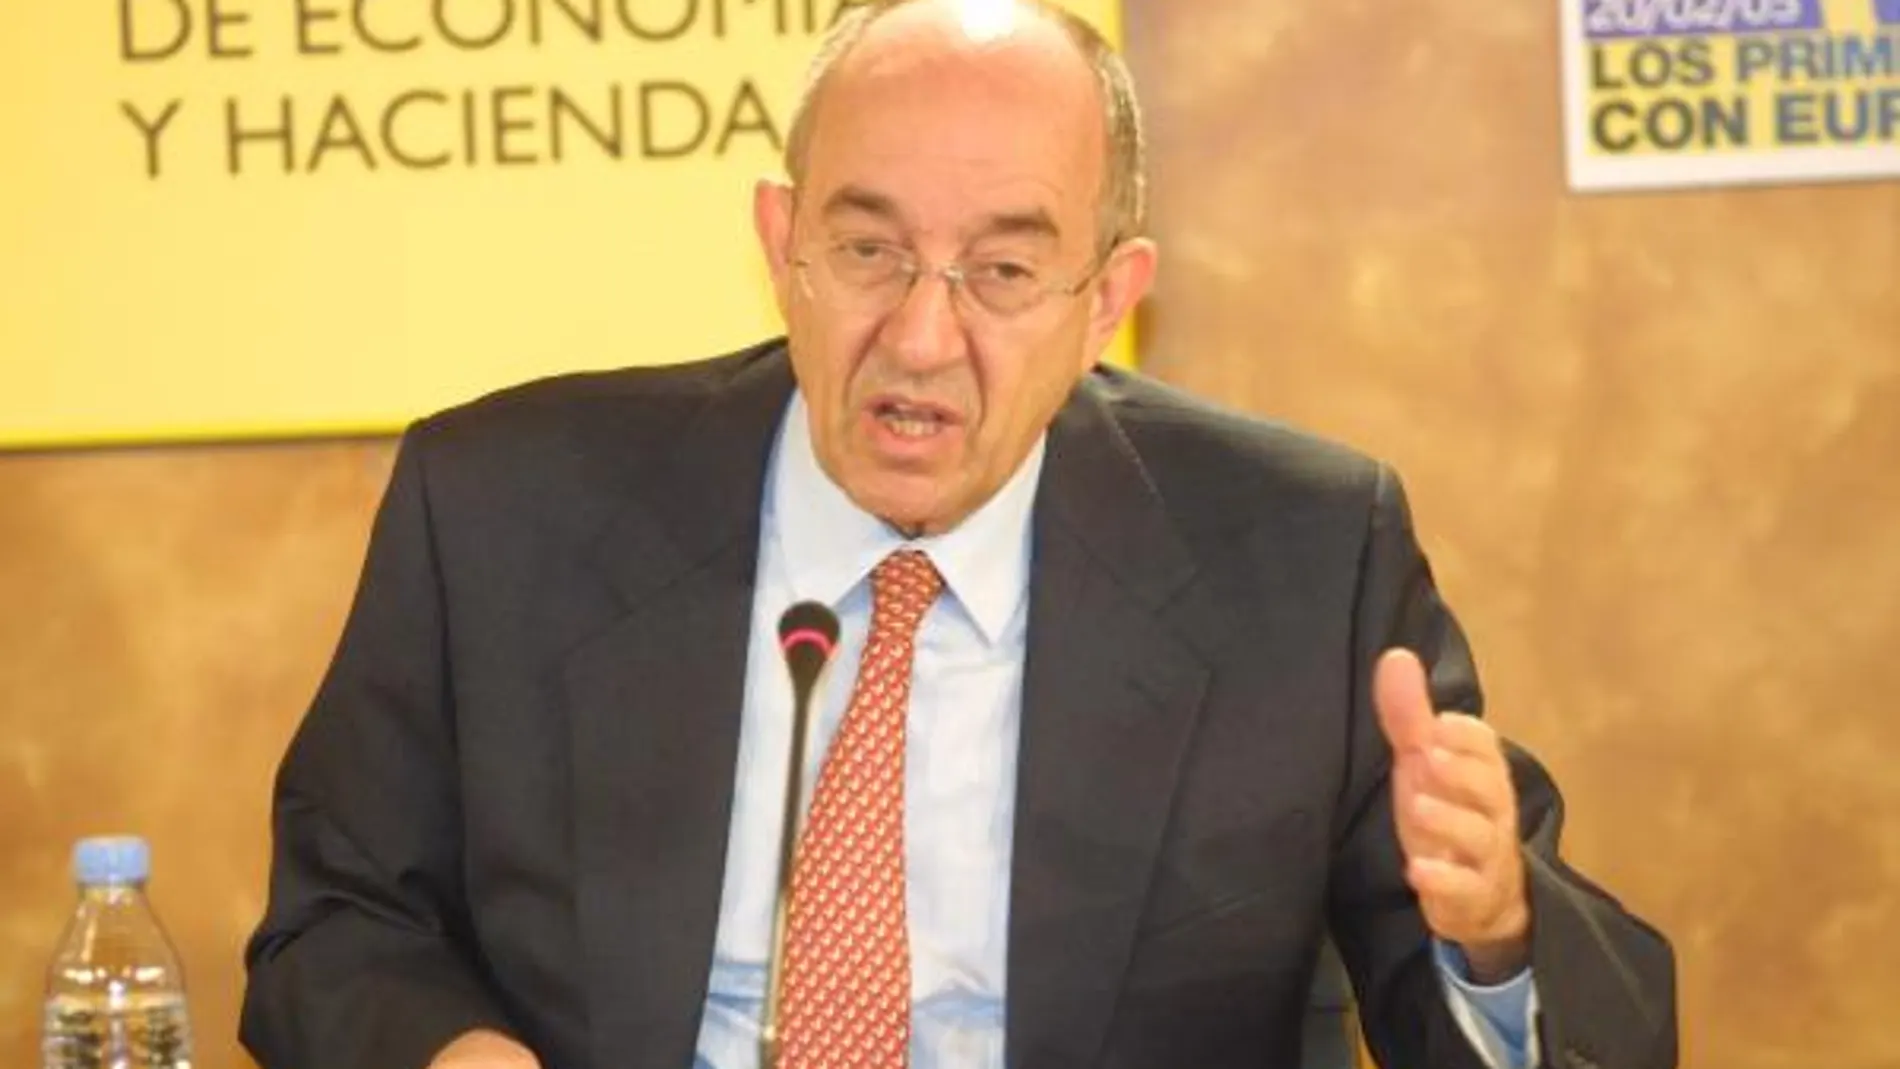 El Banco de España dice que la recapitalización de la banca era imprescindible